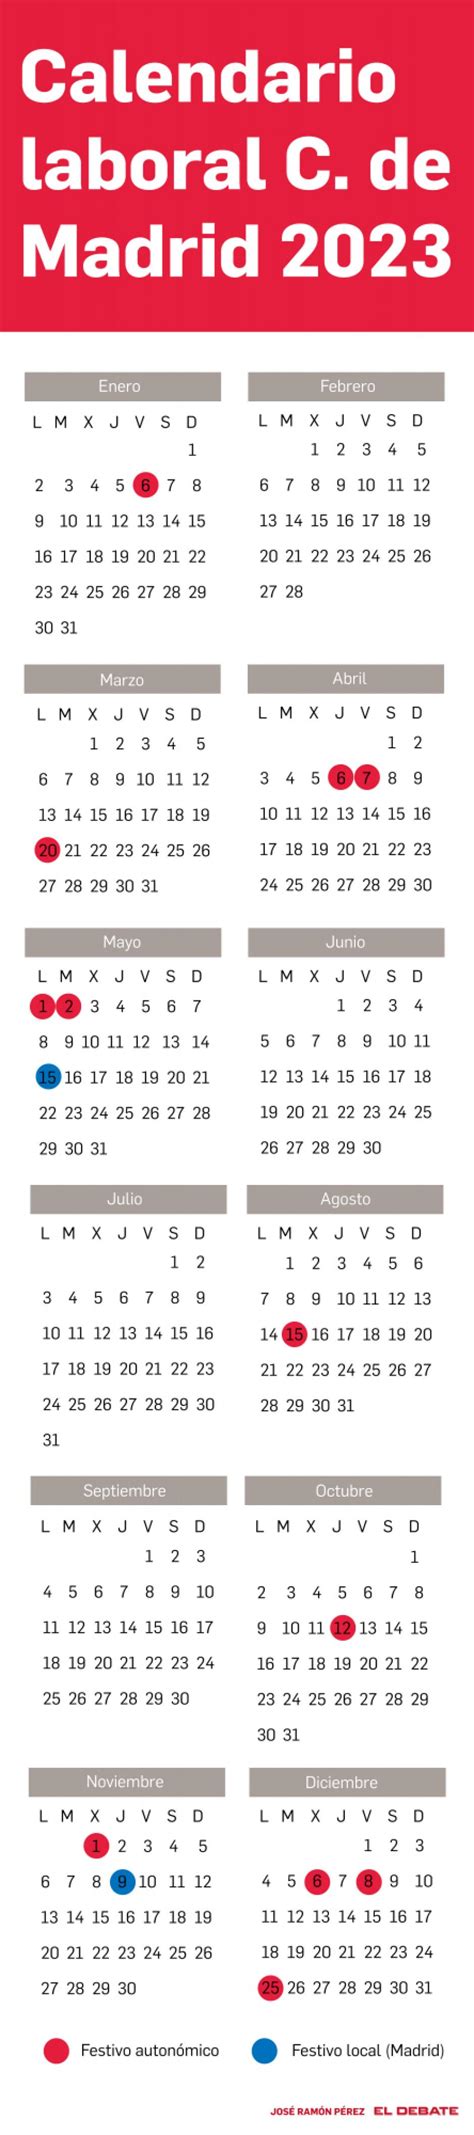 Calendario Festivos Nacionales Y Madrid Imagesee